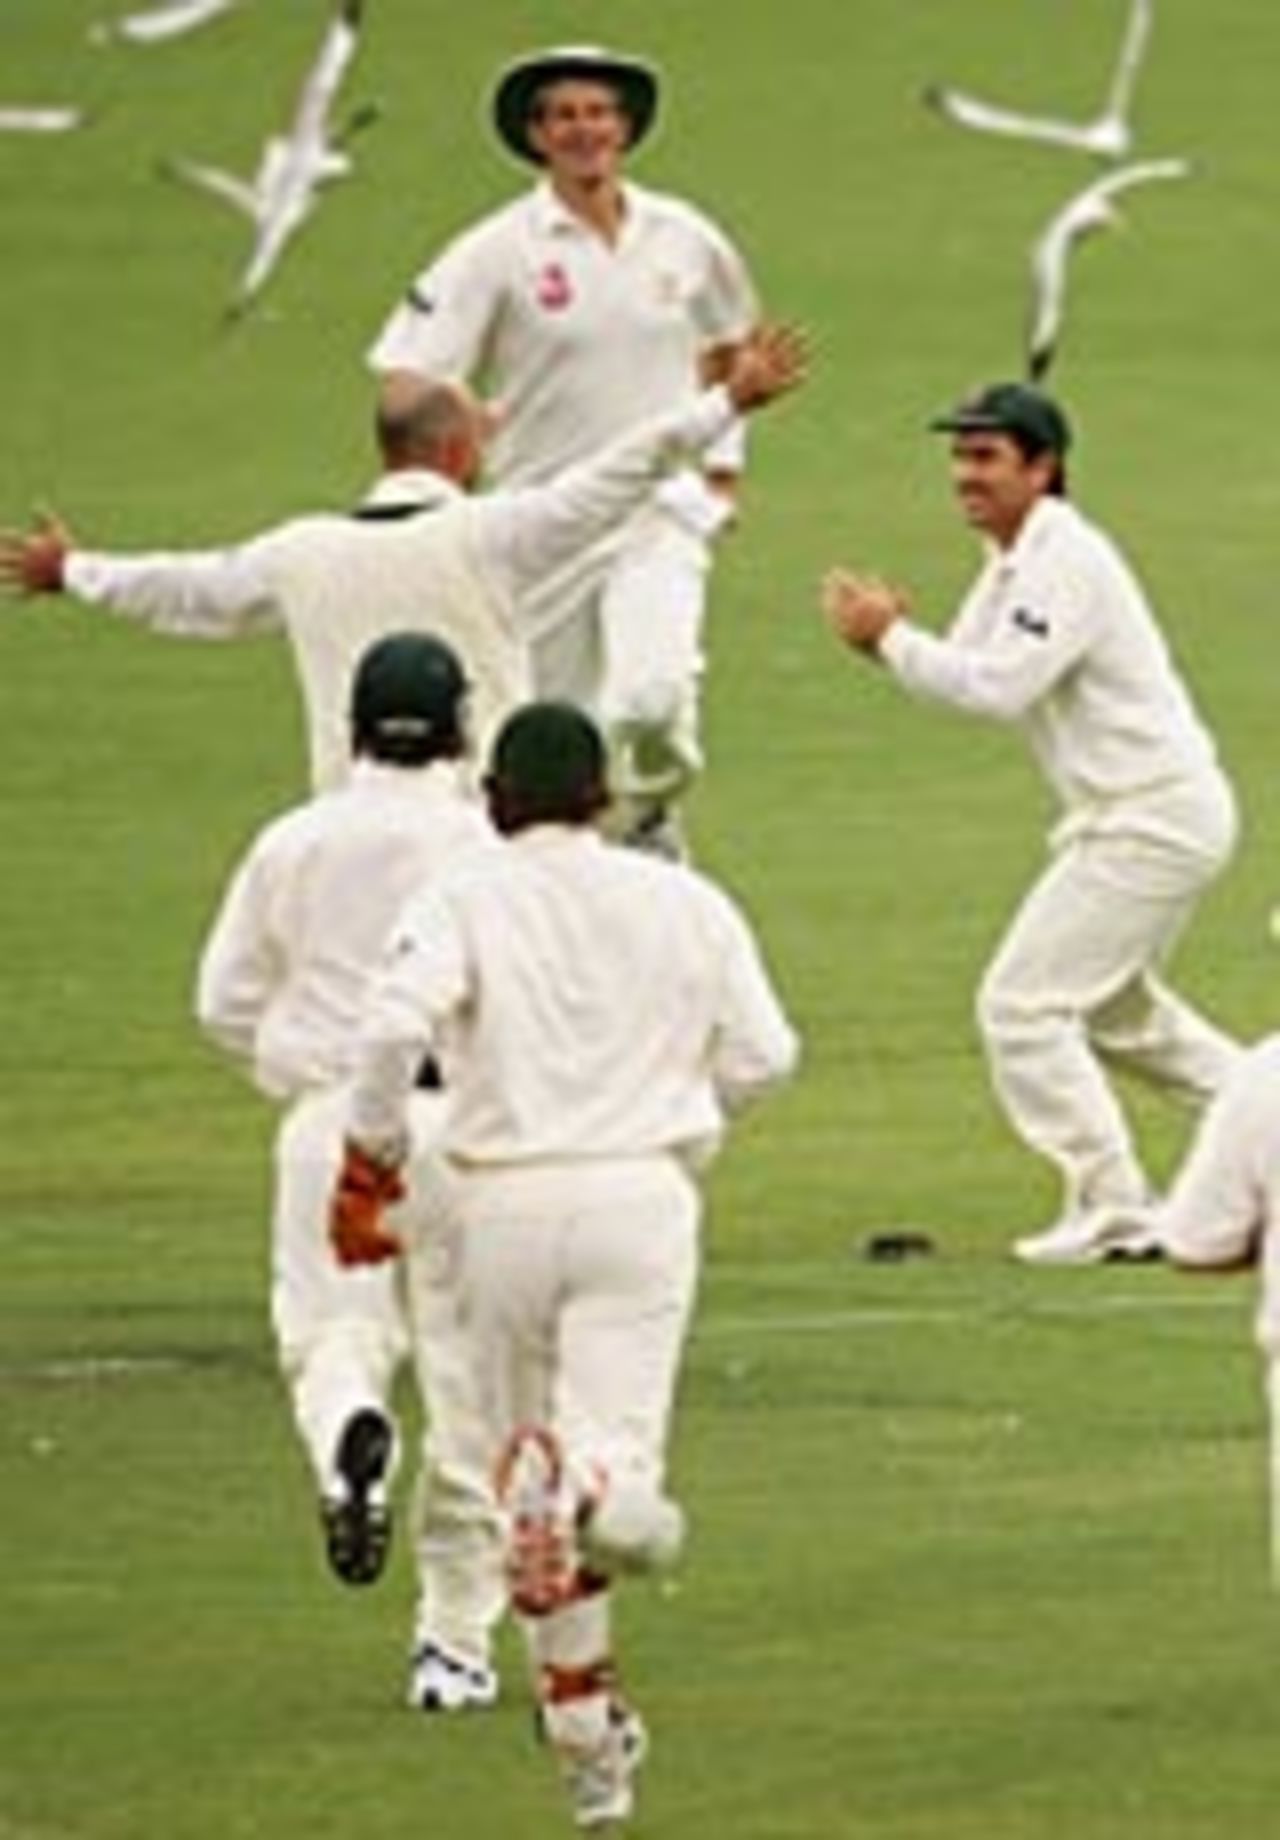 Darren Lehmann rushed to congratulate Justin Langer after dismissing Nathan Astle, Australia v New Zealand, 2nd Test, Adelaide, November 29, 2004